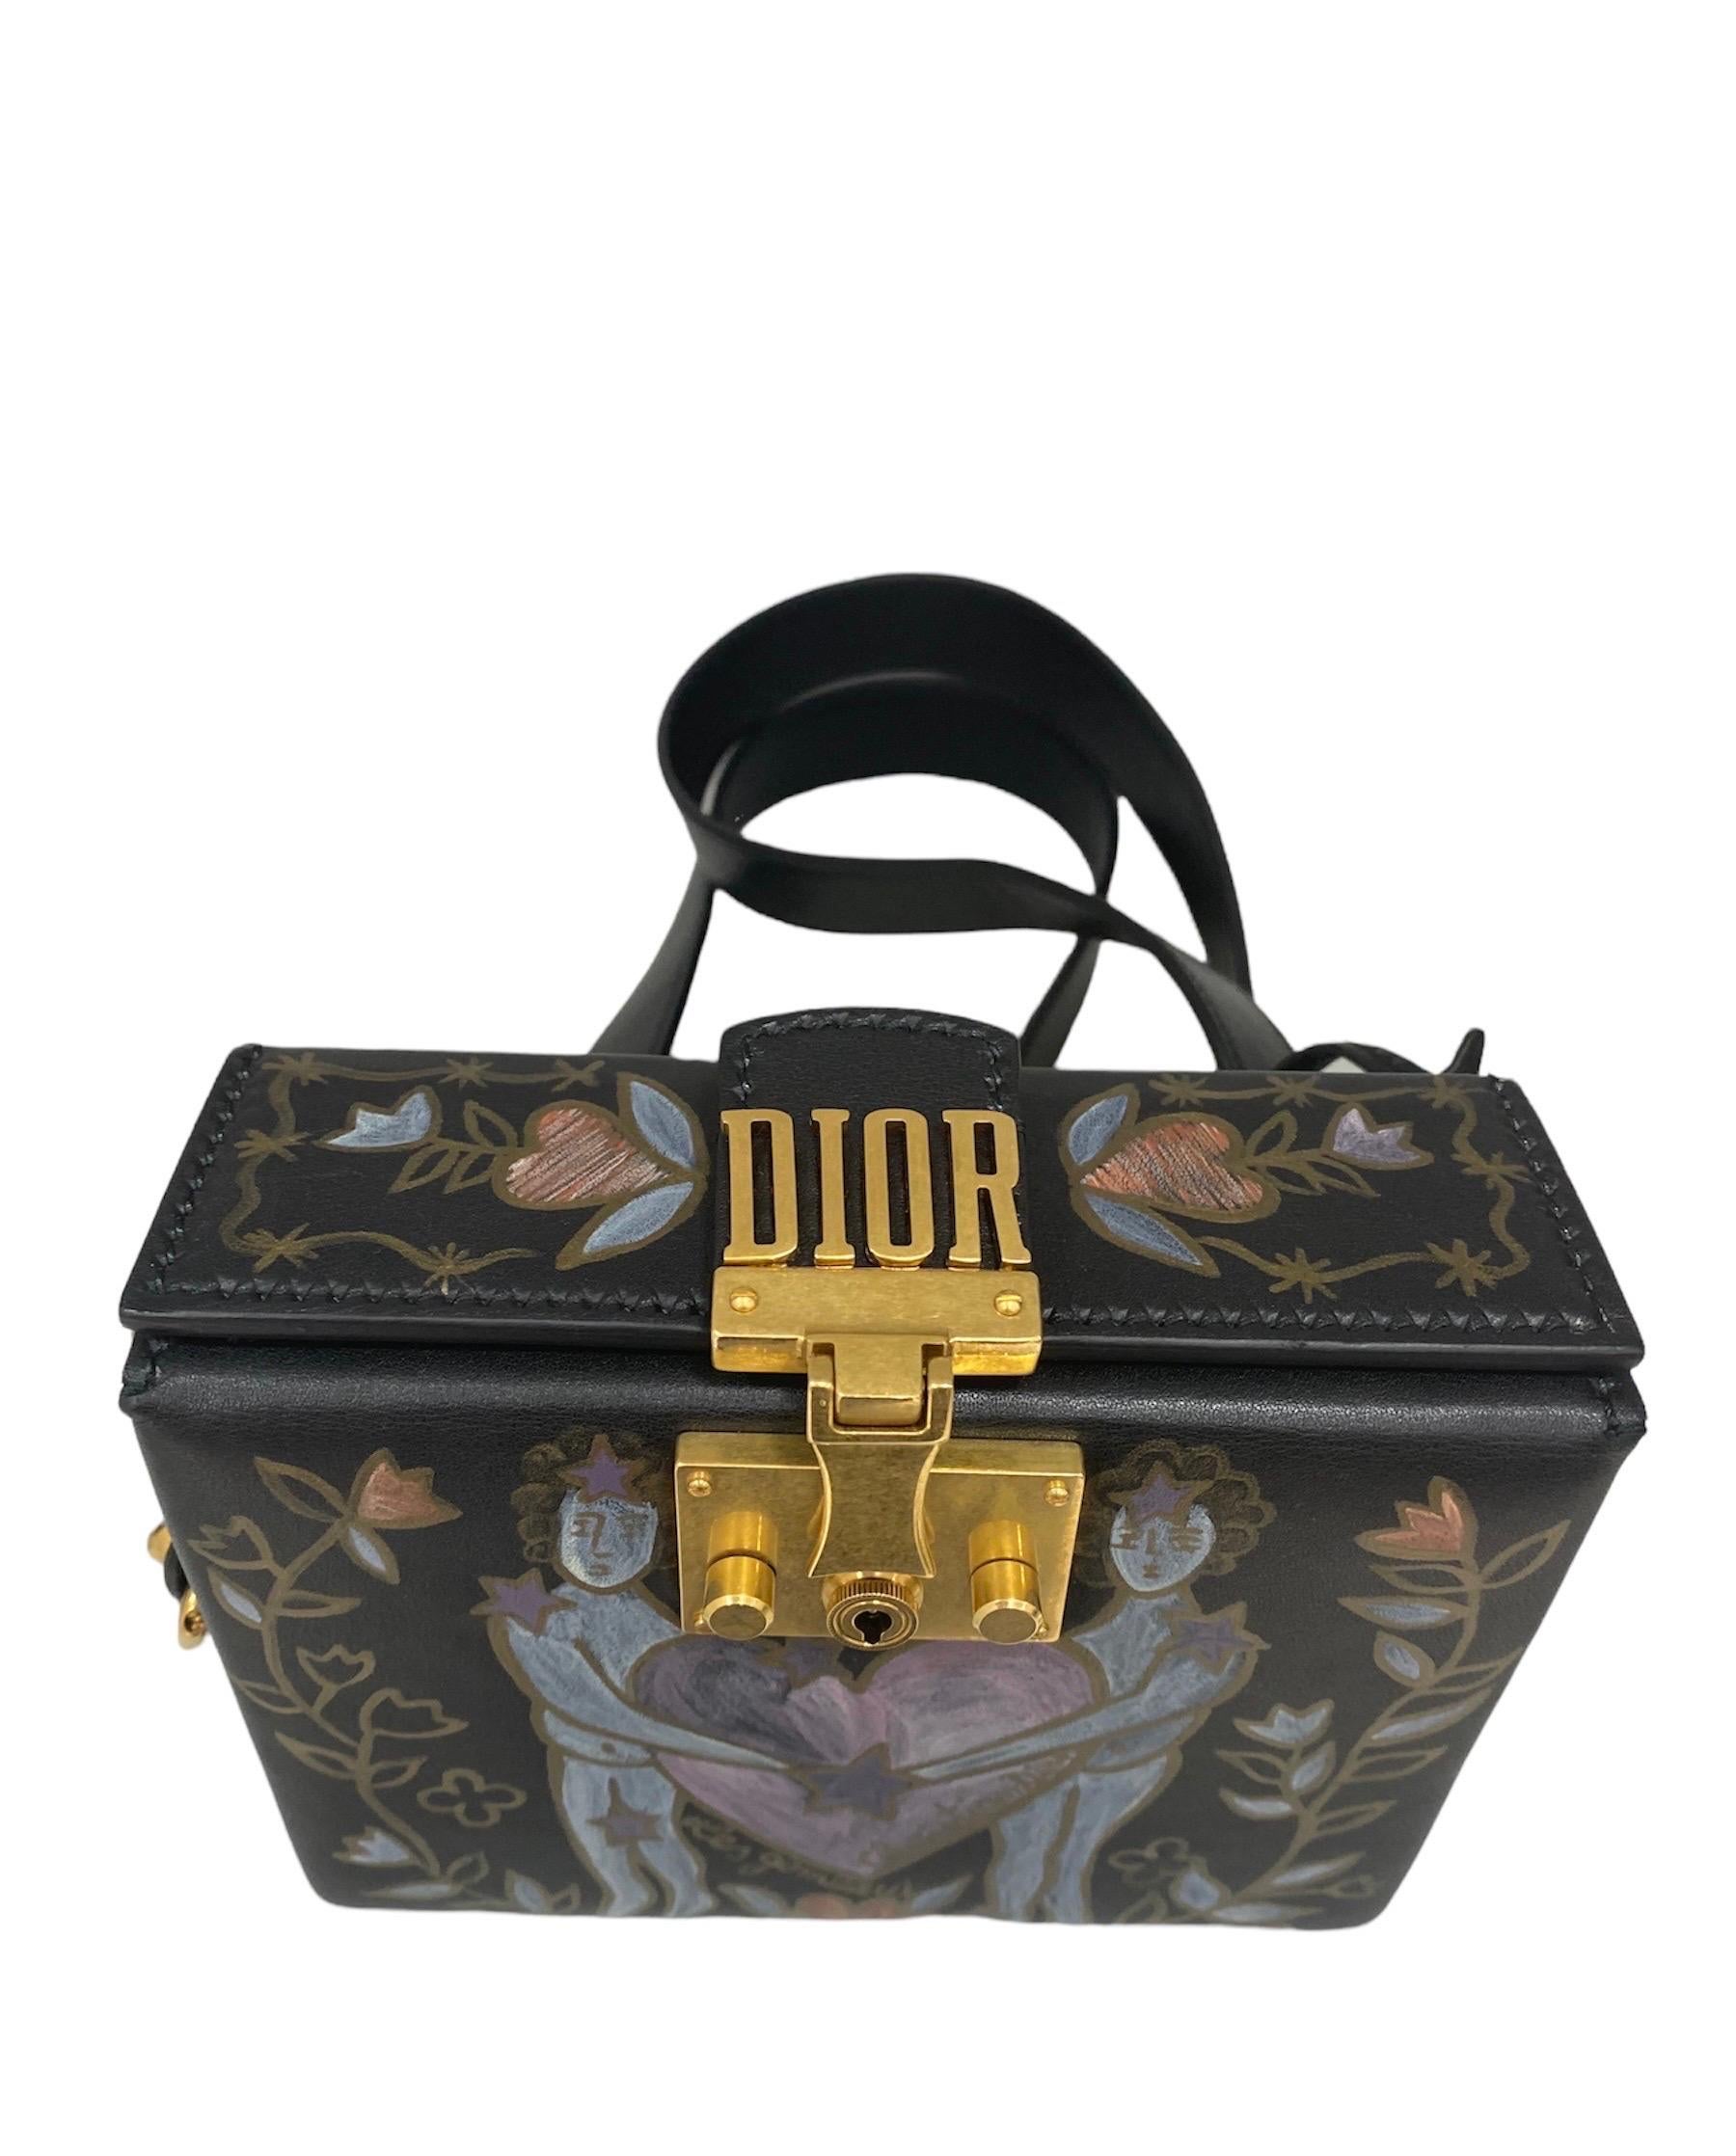 Sac signé Dior modèle LockBox en cuir lisse noir avec peinture frontale représentant le symbole des boutons de manchette et quincaillerie dorée.

Équipé d'une bandoulière amovible en cuir noir. Equipé d'une fermeture à verrouillage avec écriture